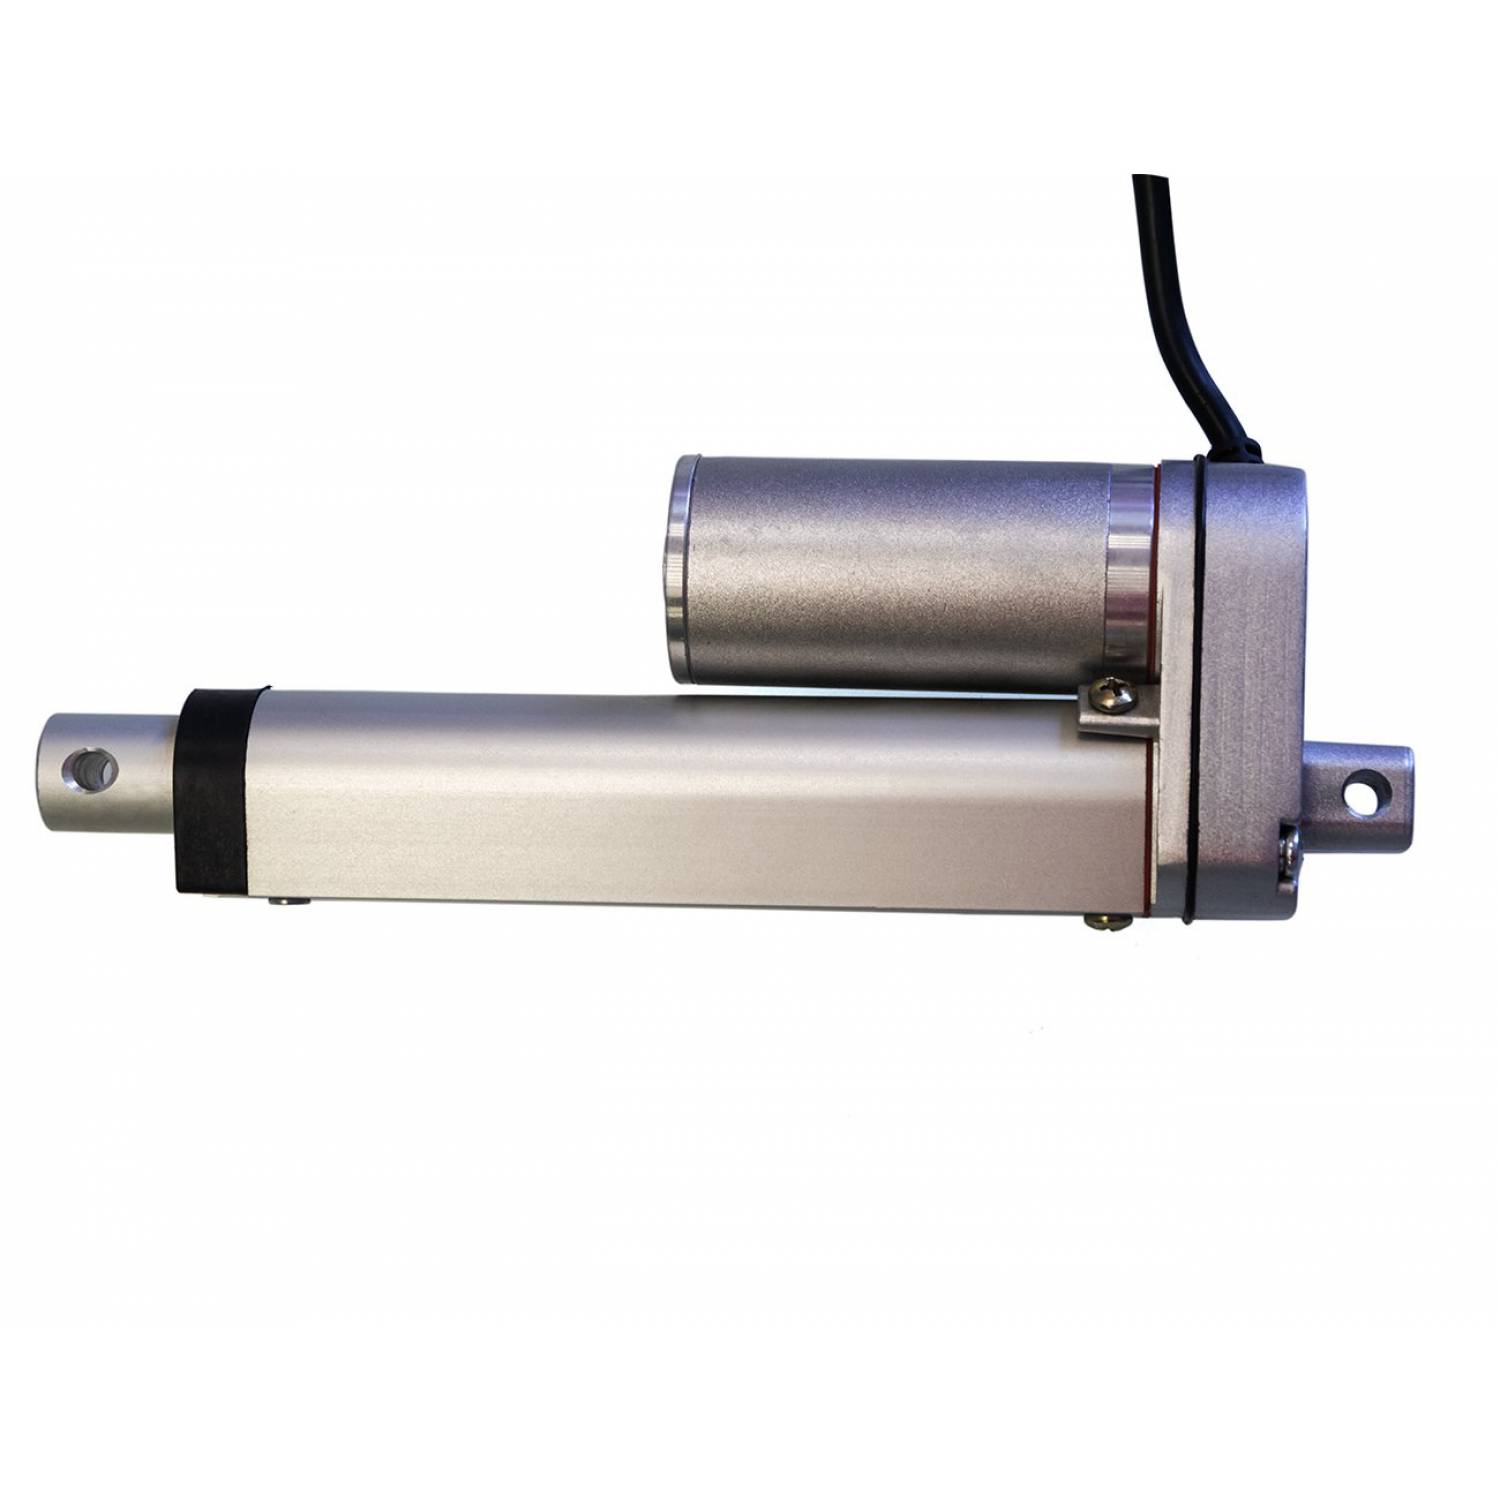 Актуатор (линейный привод) длина 500 мм, питание 12 вольт , нагрузка до 50 кг, скорость 6 мм/сек